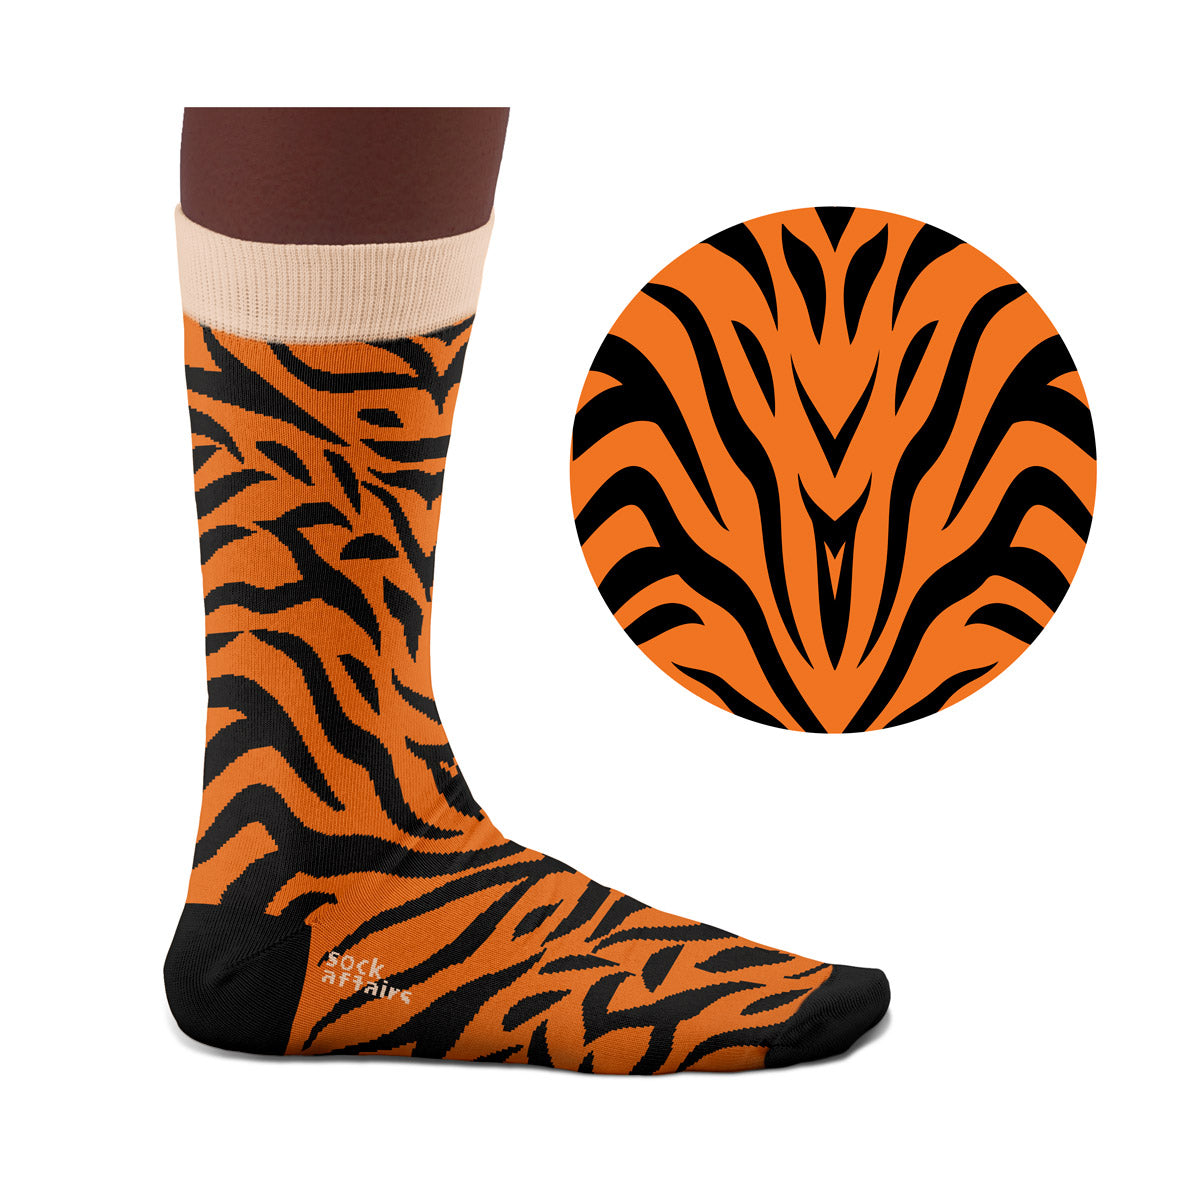 Cute Tiger Socks  Socks, Cool socks, Cute tigers